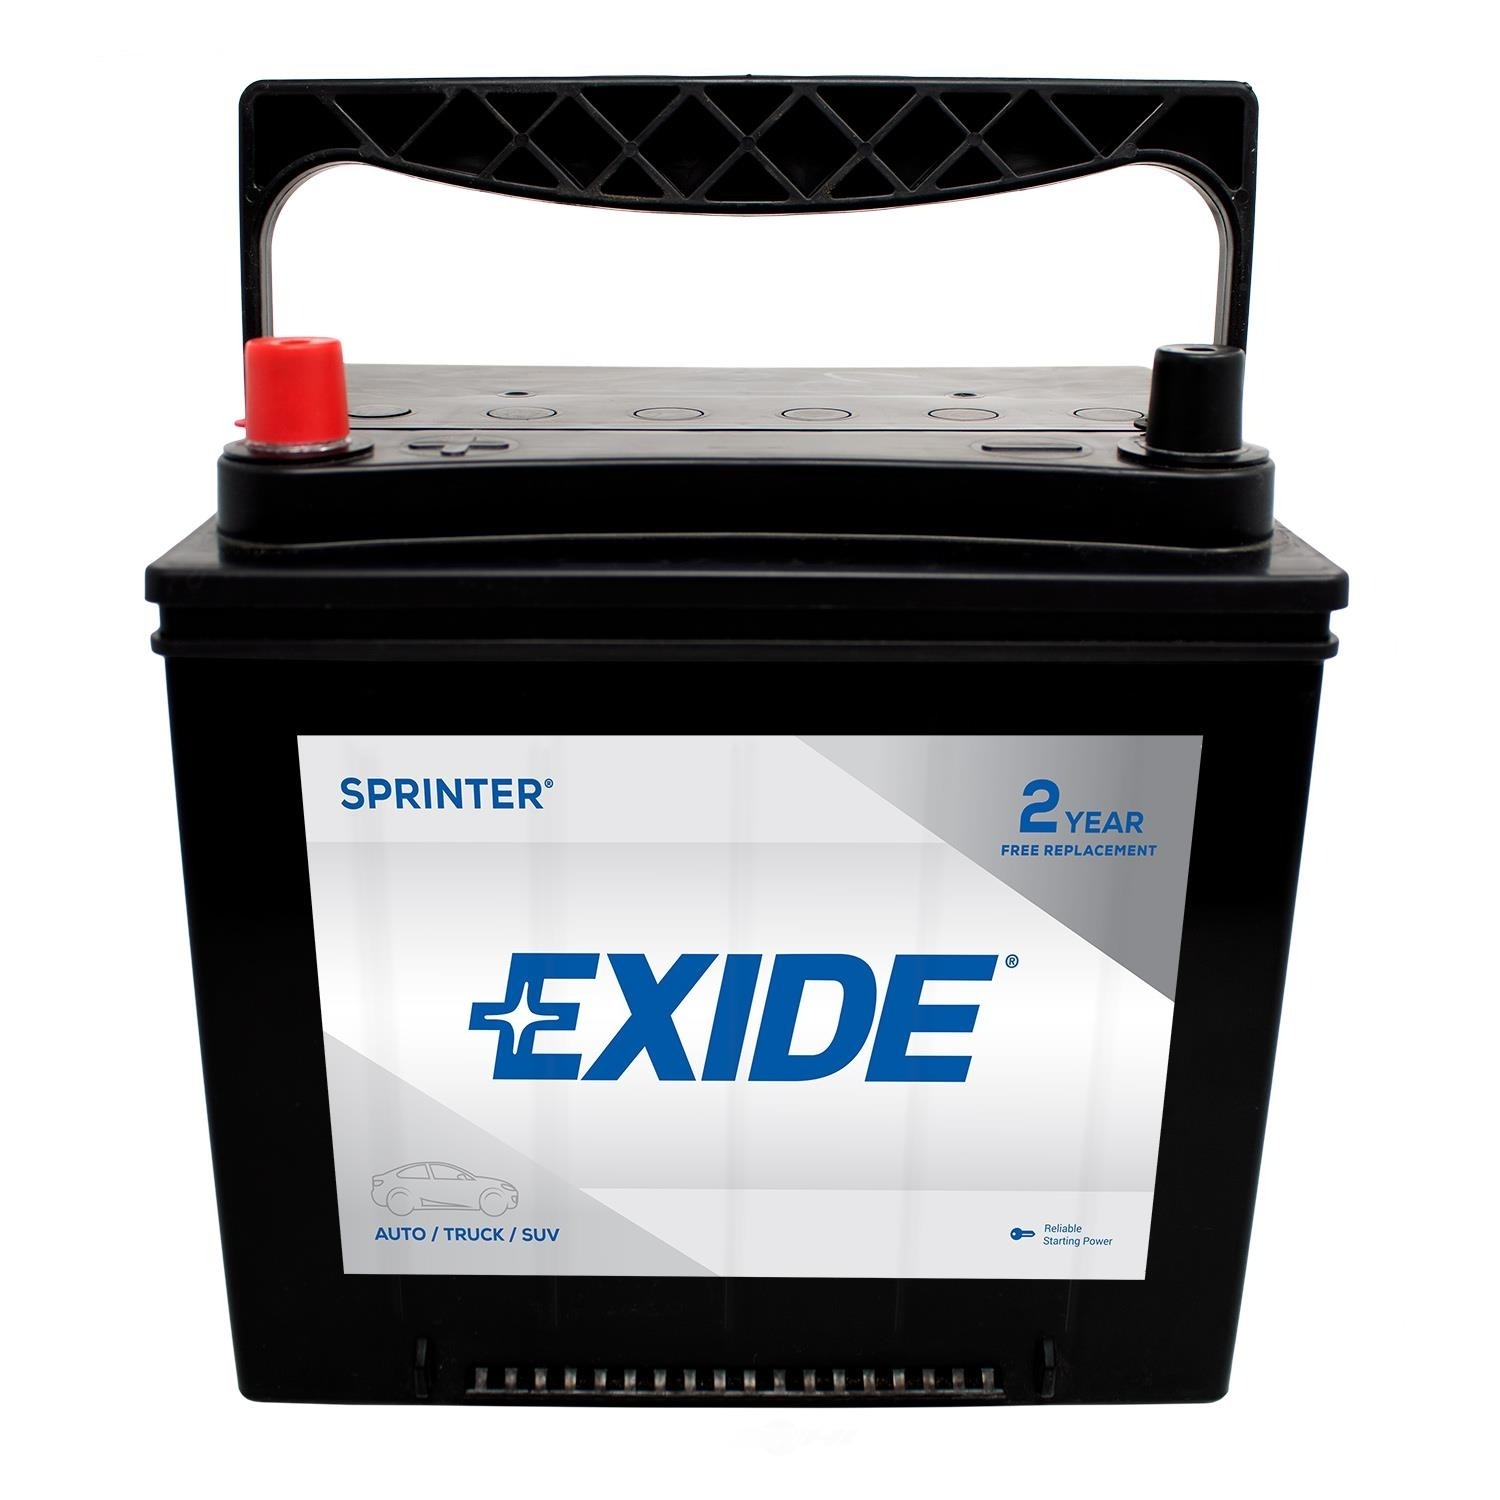 EXIDE BATTERIES - SPRINTER - CCA: 600 - EX1 S86